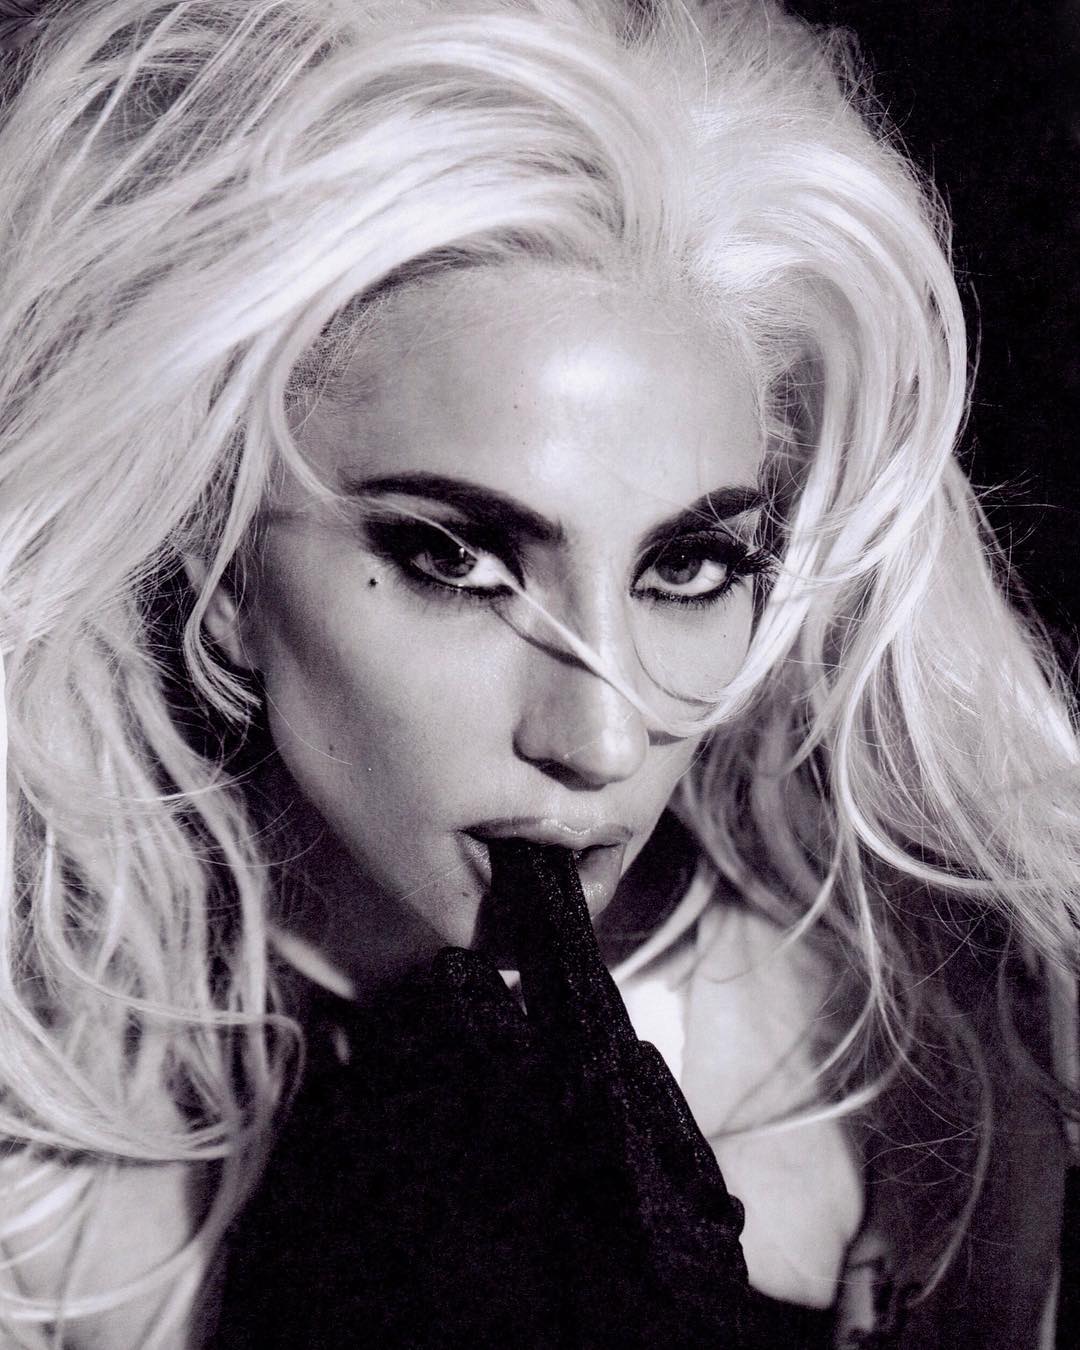 Голая Леди Гага поделилась серией откровенных фото - фото 143702